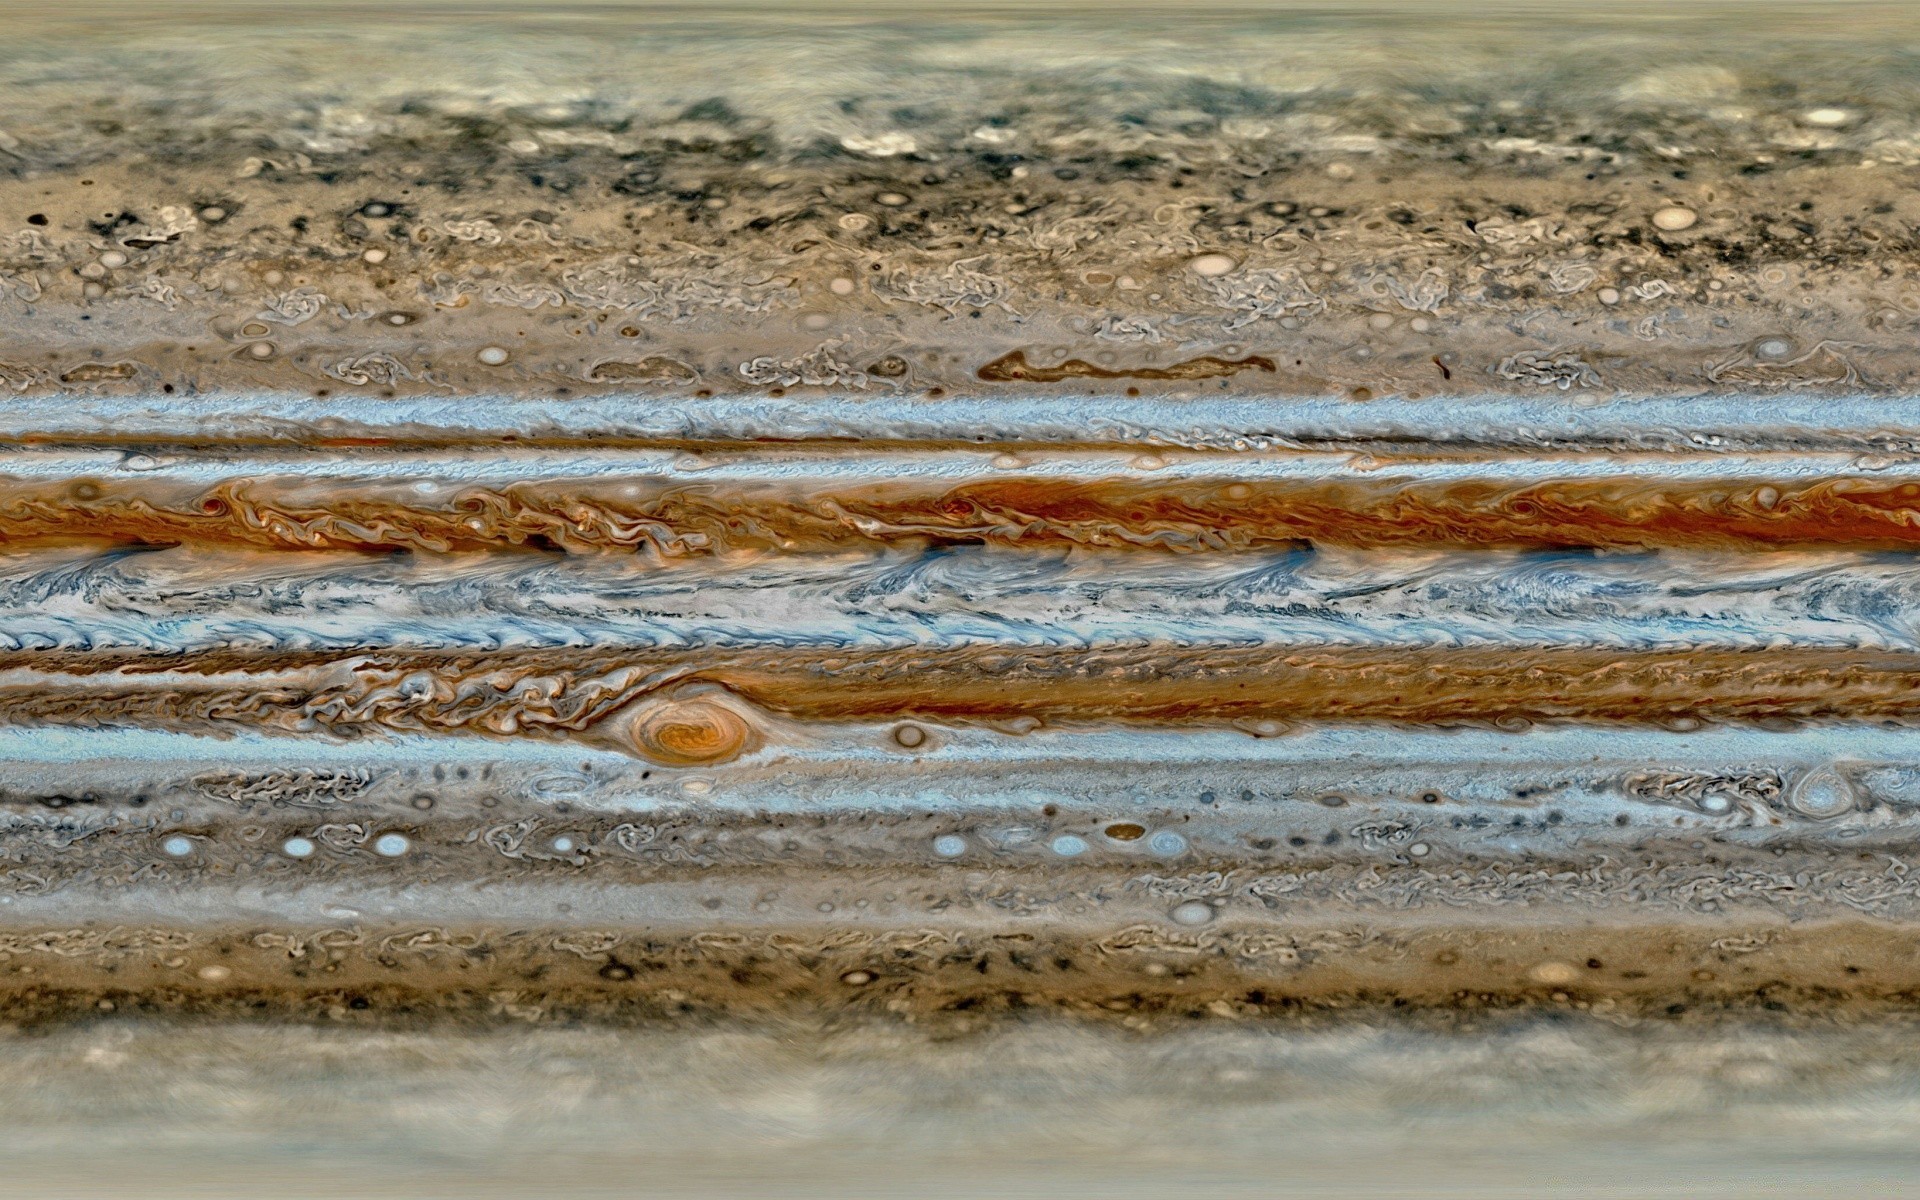 космос воды рабочего стола природа отражение путешествия цвет текстура море пейзаж озеро пляж горячая океан небо на открытом воздухе